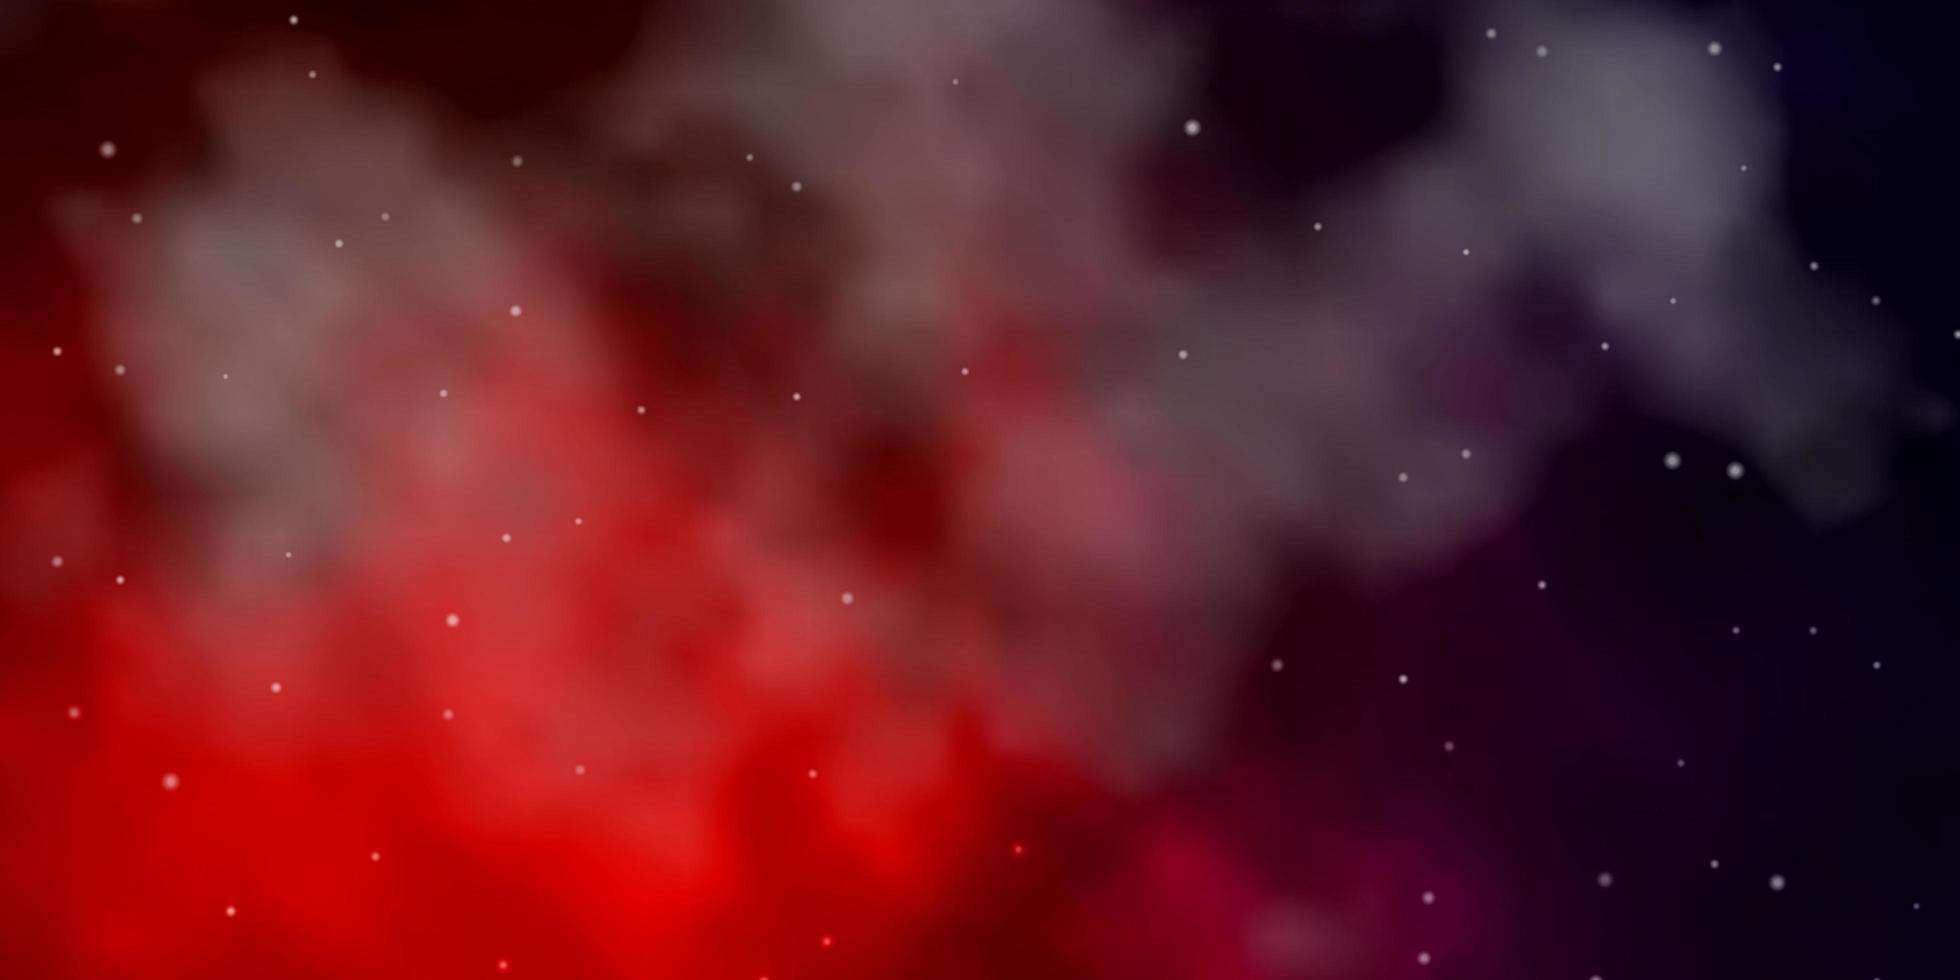 texture vecteur rouge bleu foncé avec de belles étoiles illustration colorée avec conception abstraite d'étoiles dégradées pour la promotion de votre entreprise